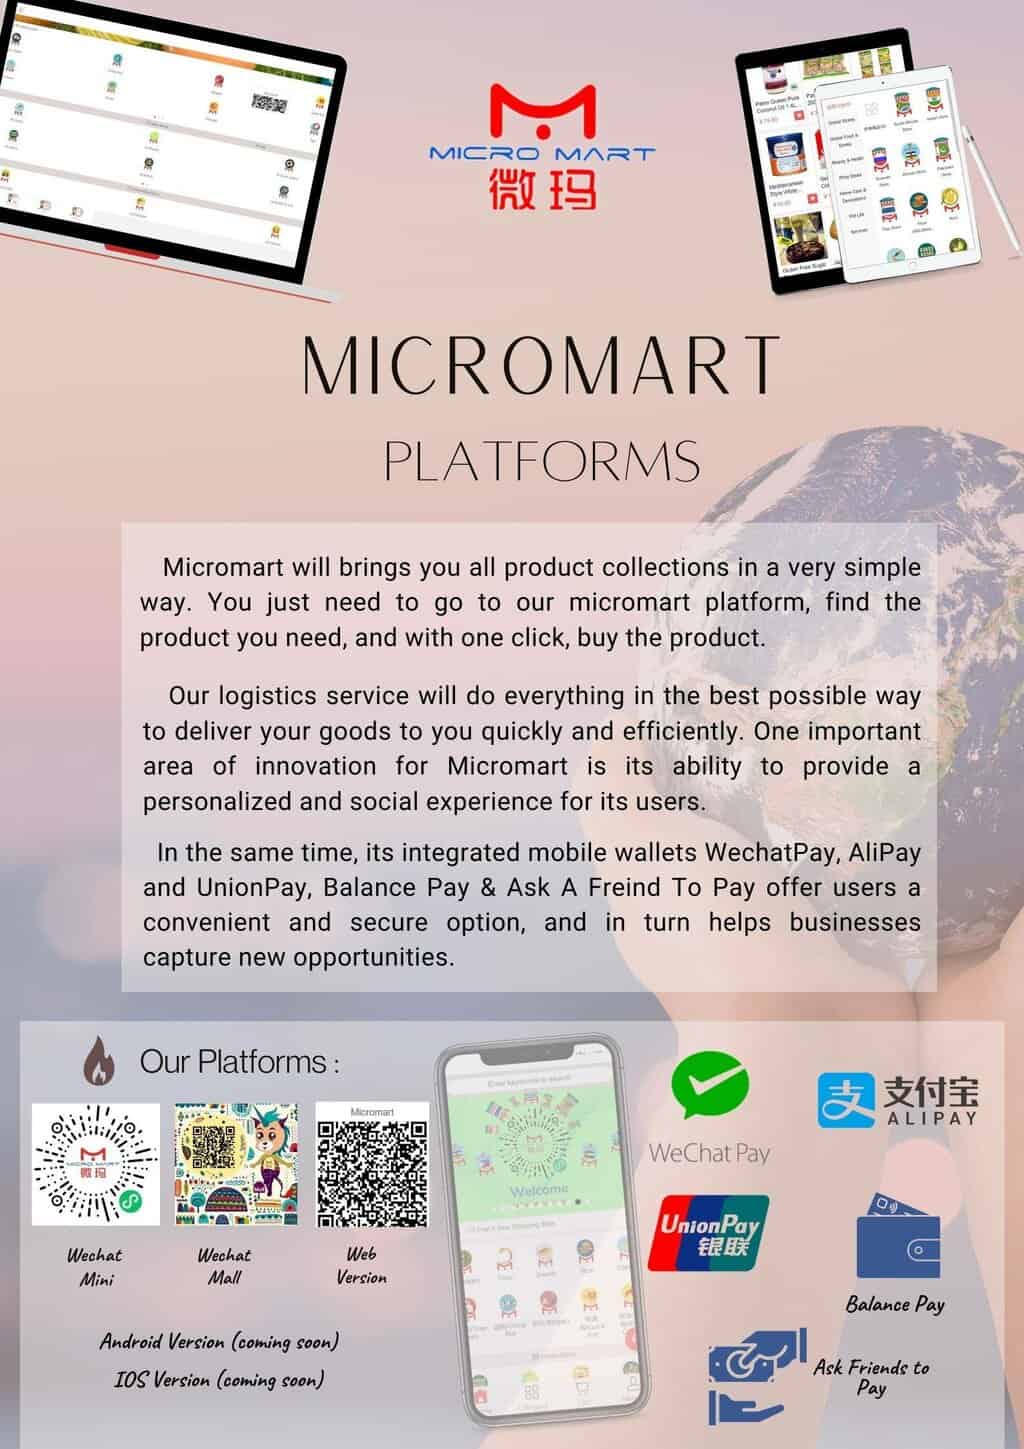 Micromart - Platforms